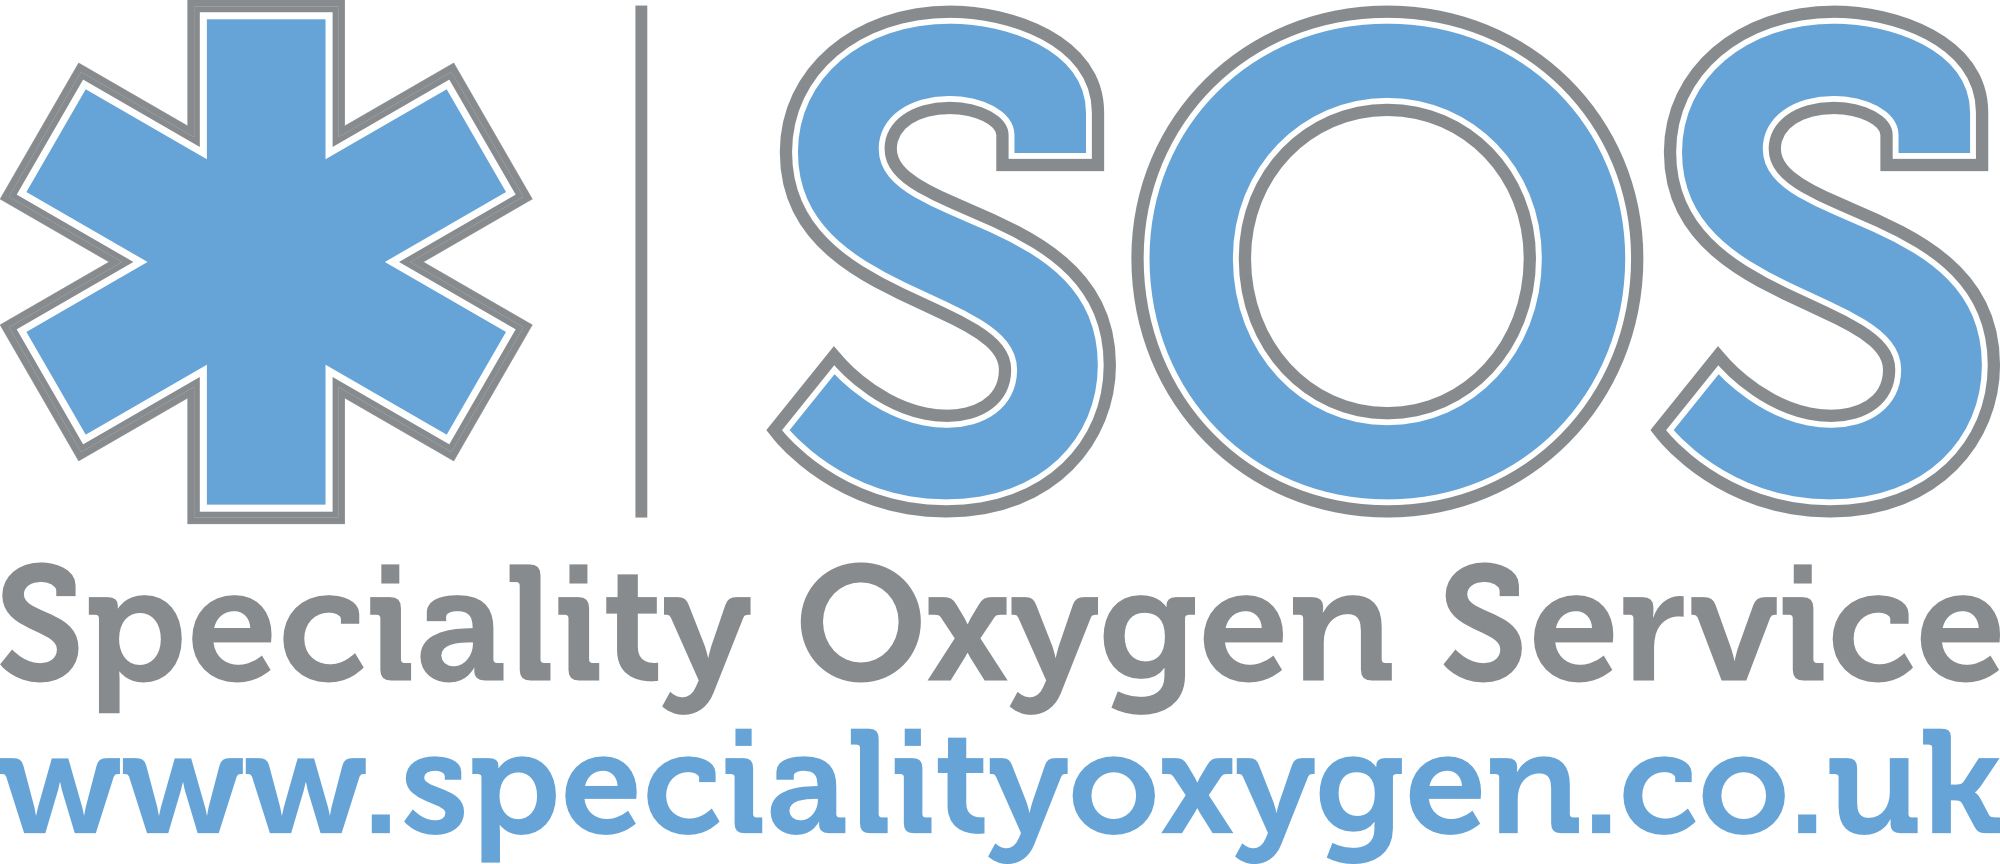 Speciality Oxygen Service